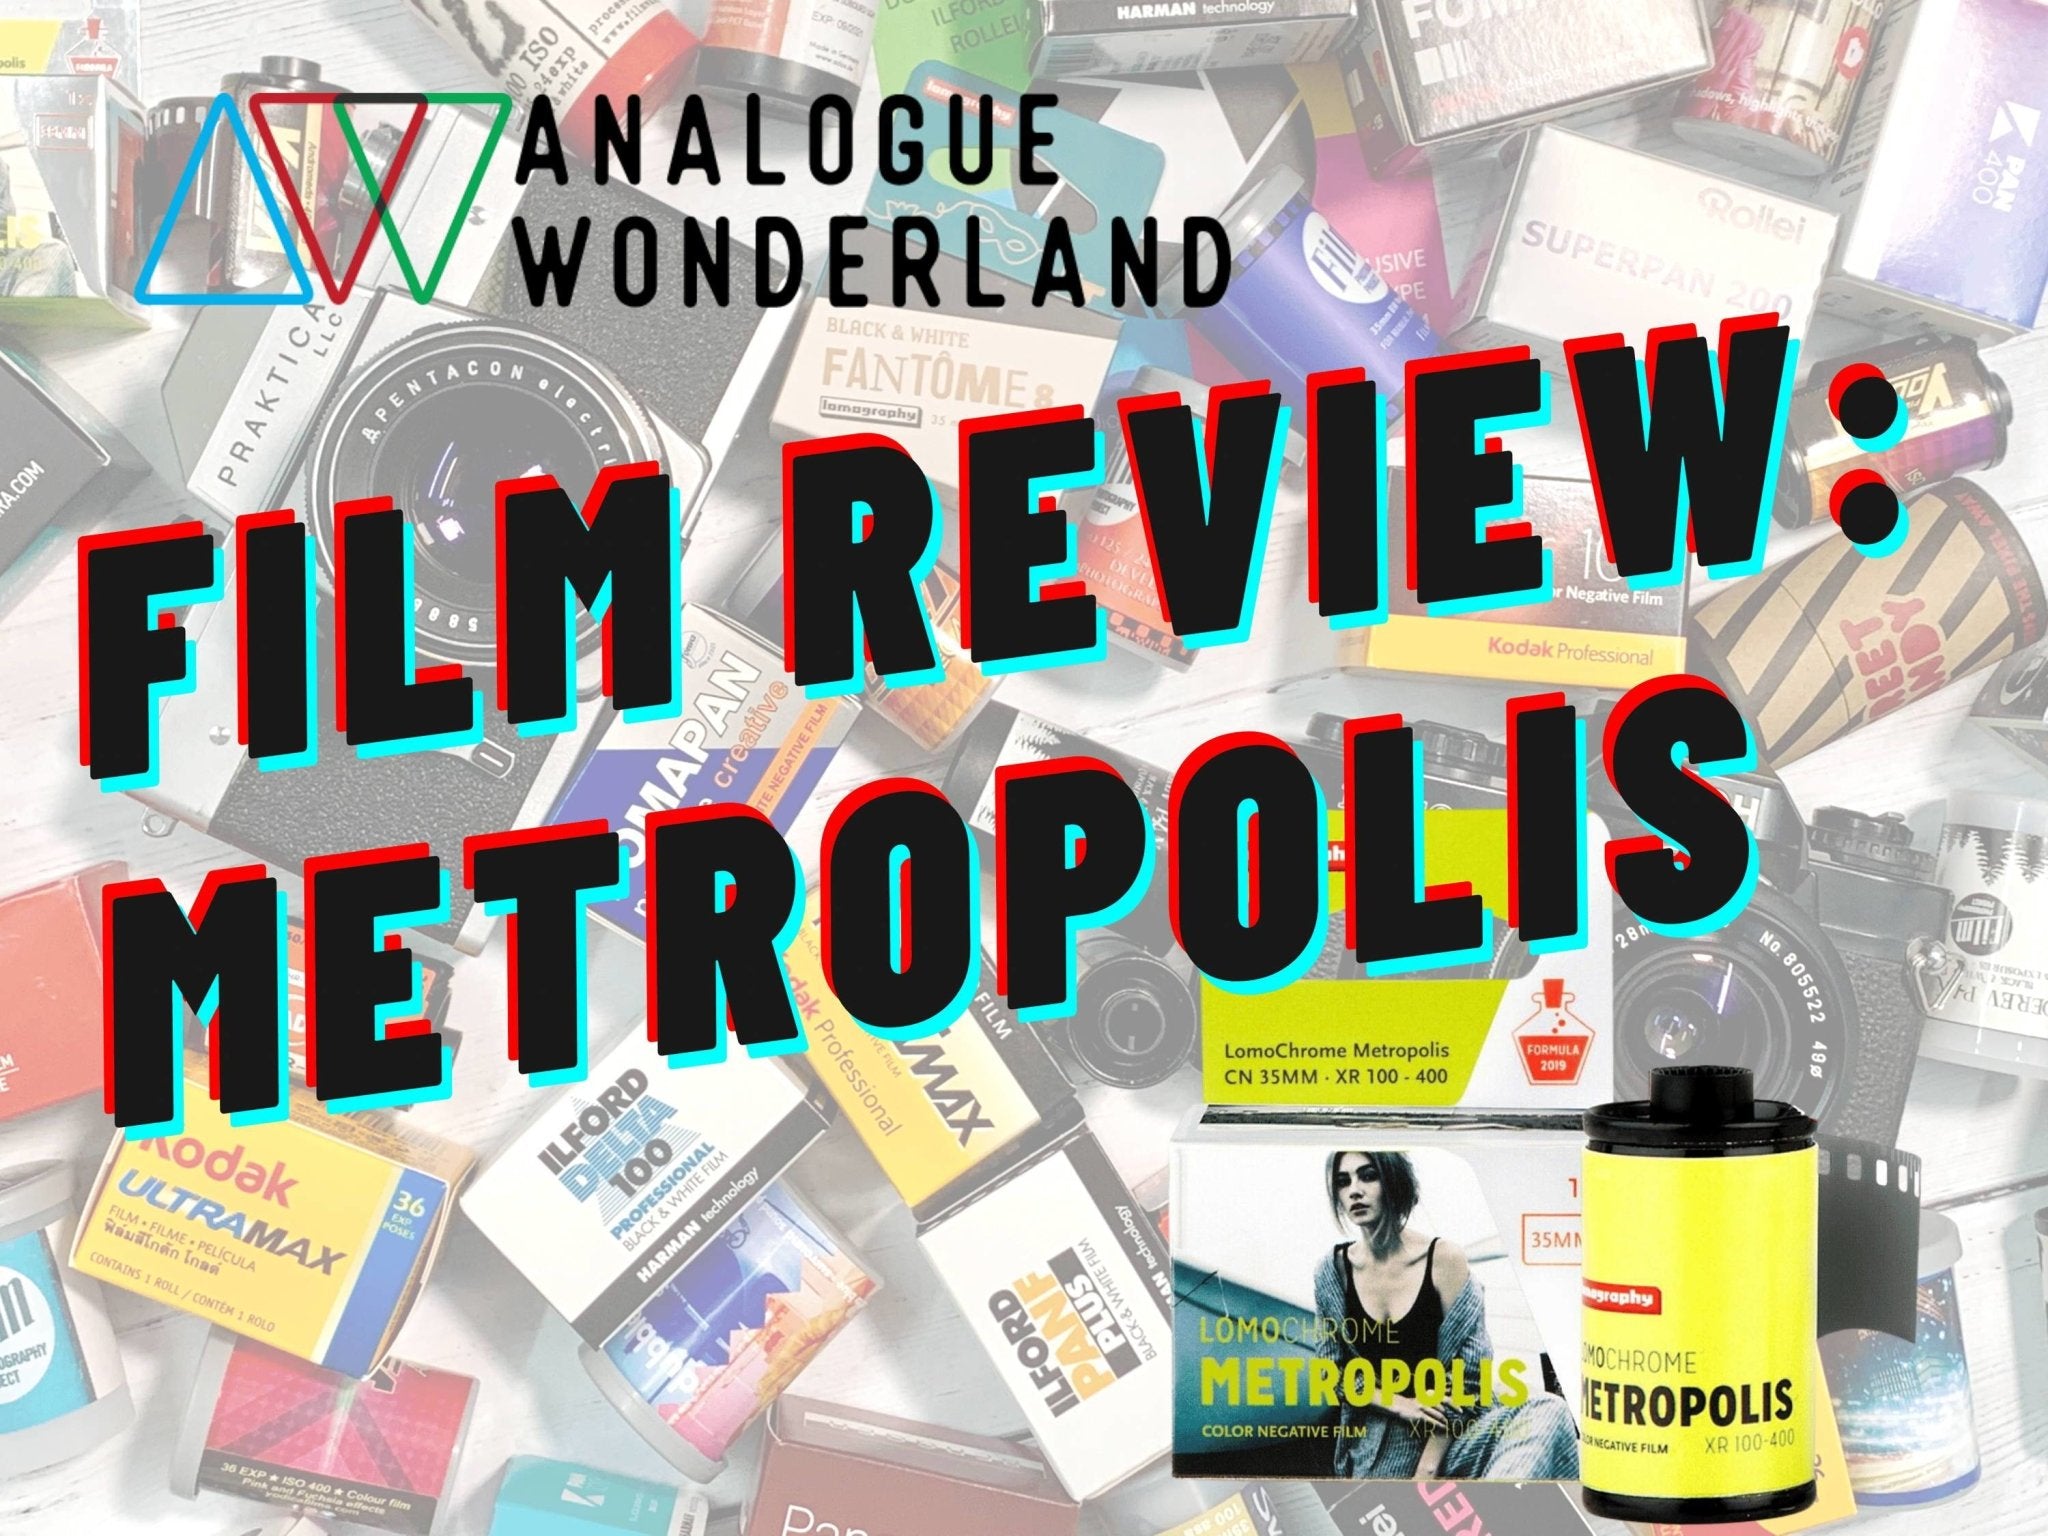 Lomography Metropolis Review - Analogue Wonderland